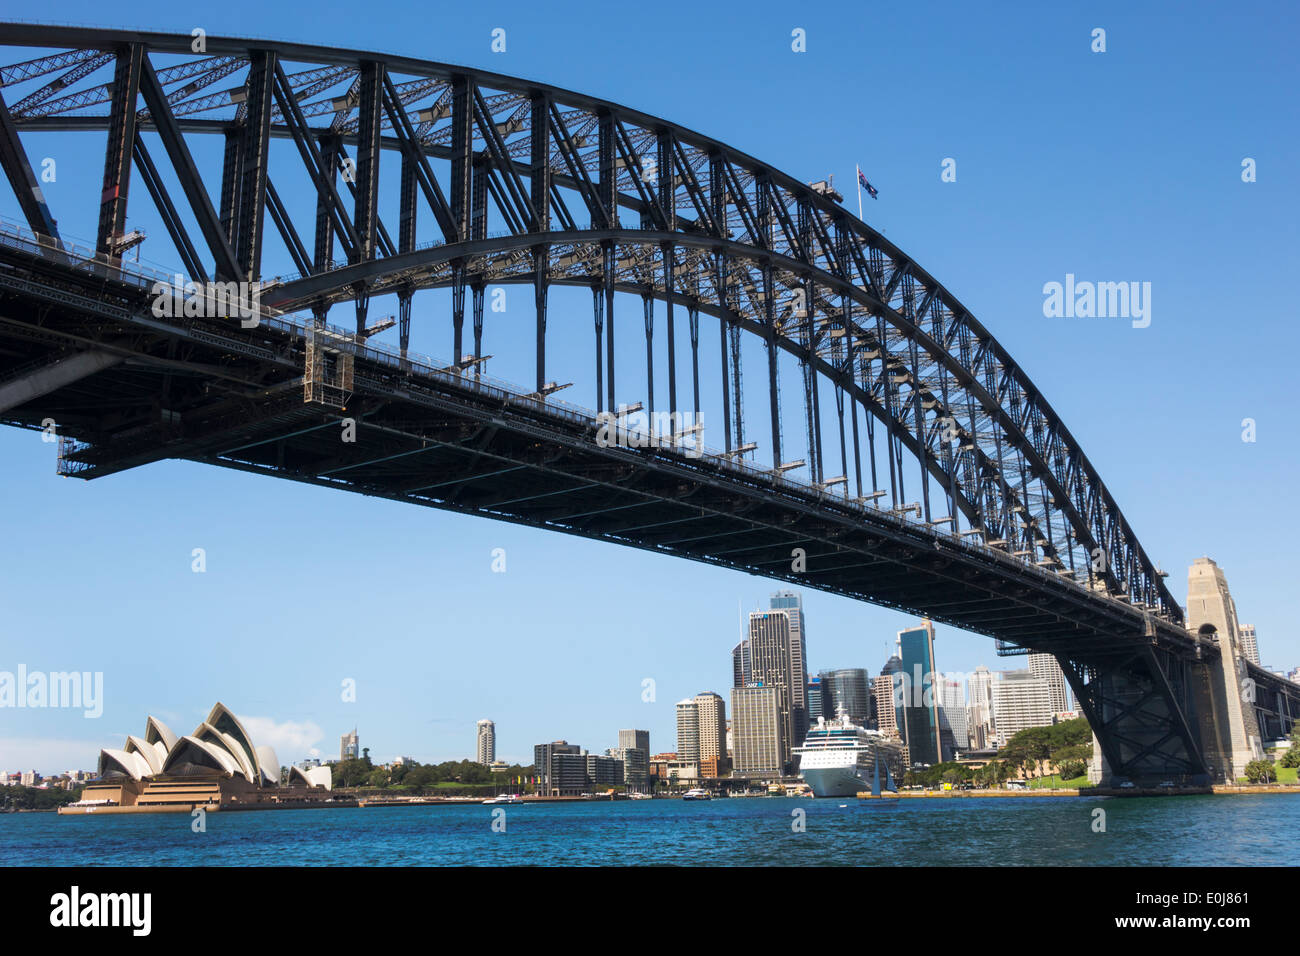 Sydney Australien, Harbour Bridge, Hafen, Skyline der Stadt, Gebäude, Wolkenkratzer, Opernhaus, AU140310062 Stockfoto